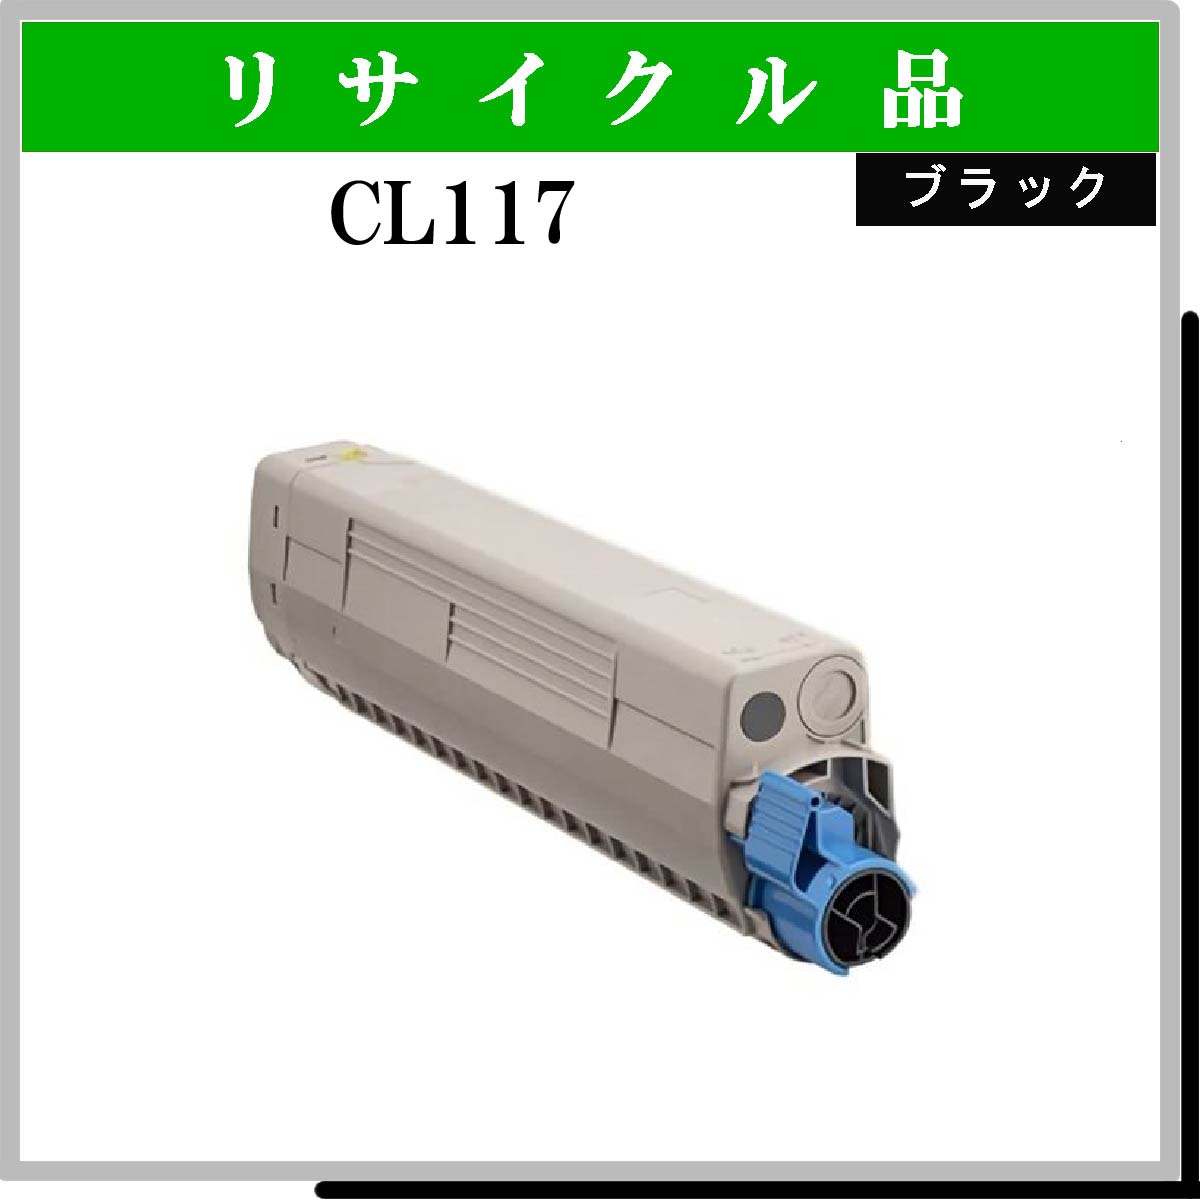 CL117 ﾌﾞﾗｯｸ